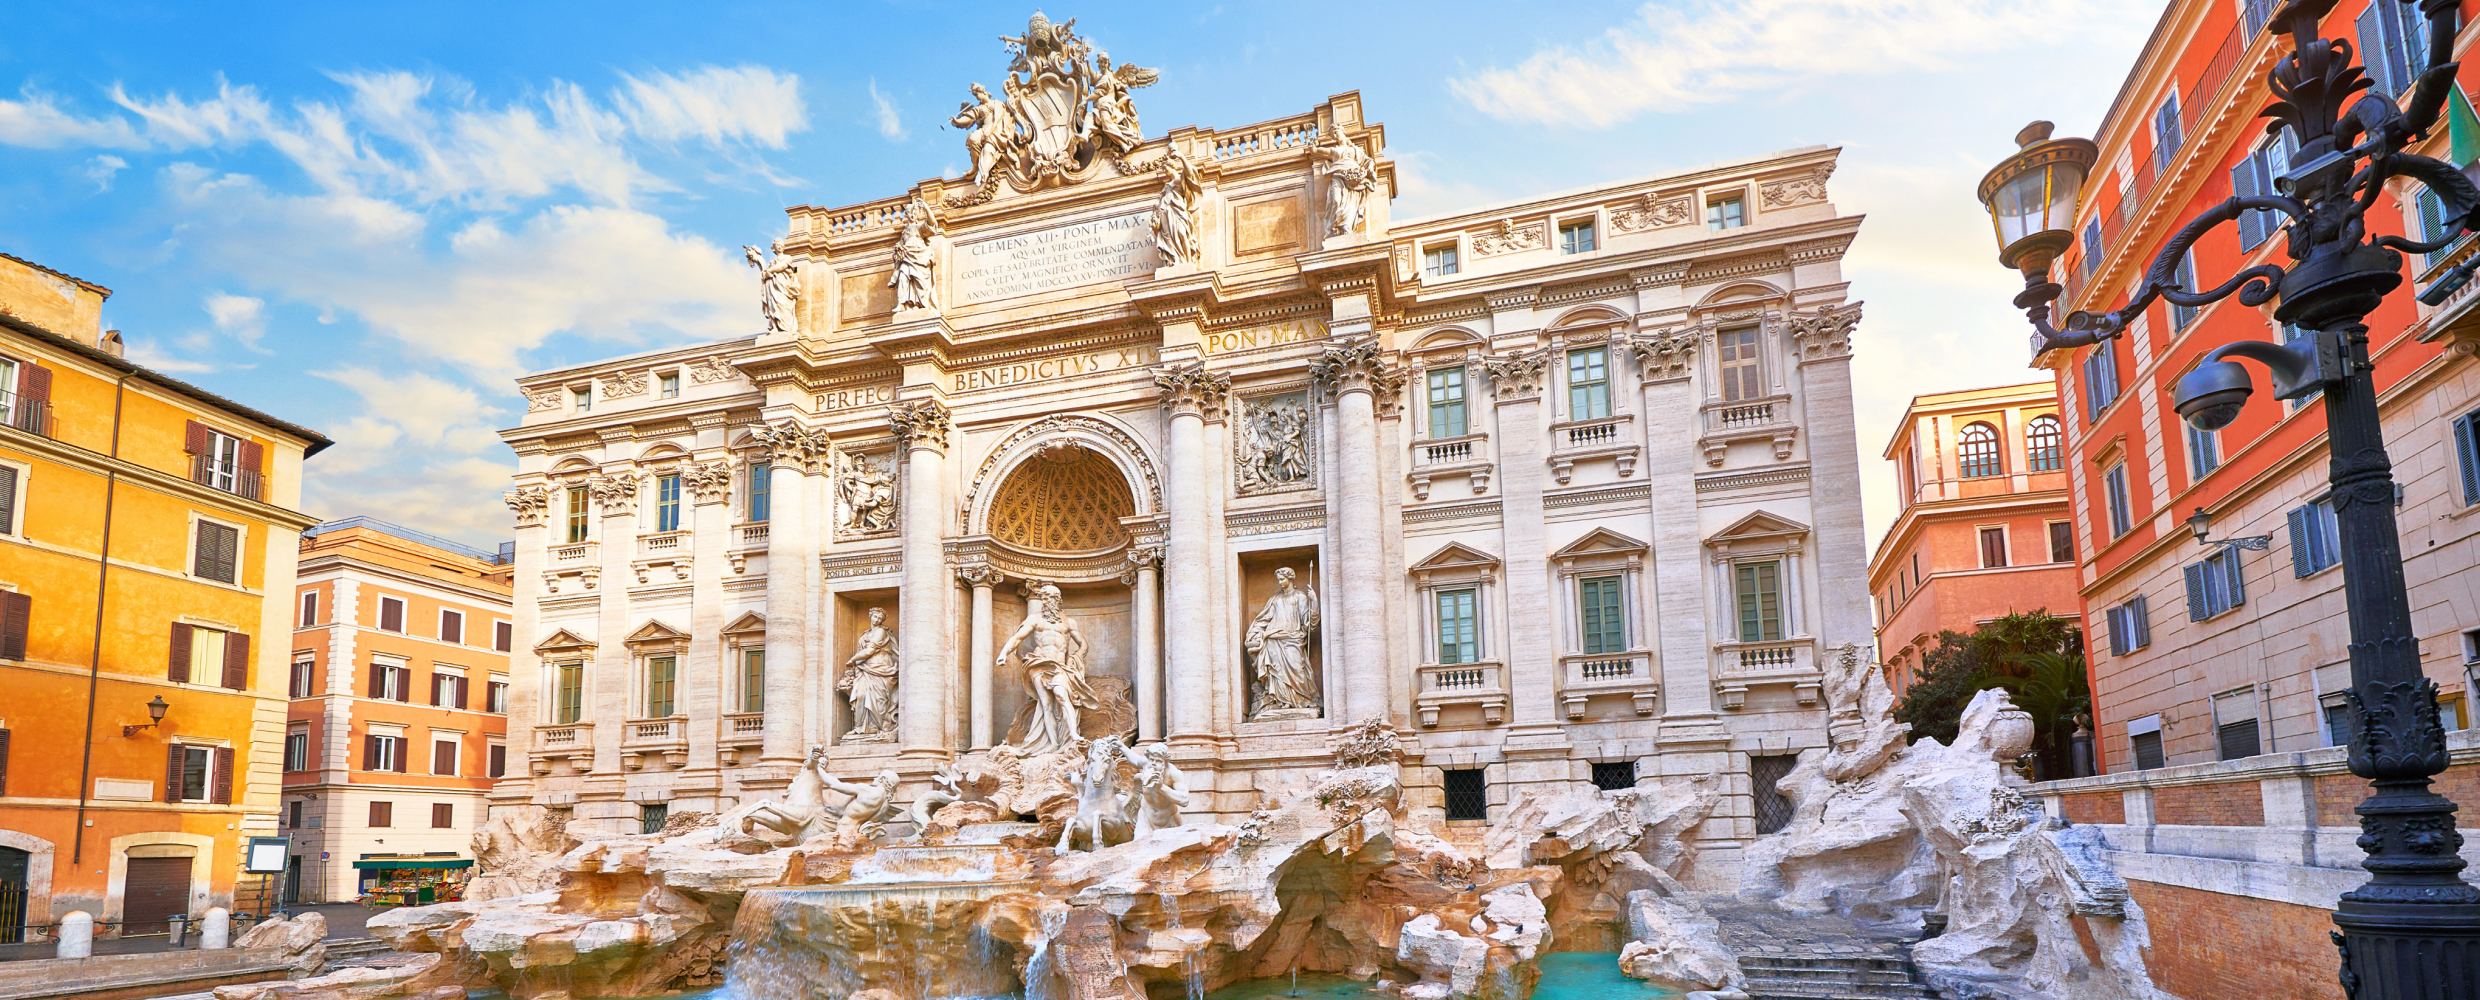 The Trevi Fountain, 'La dolce vita